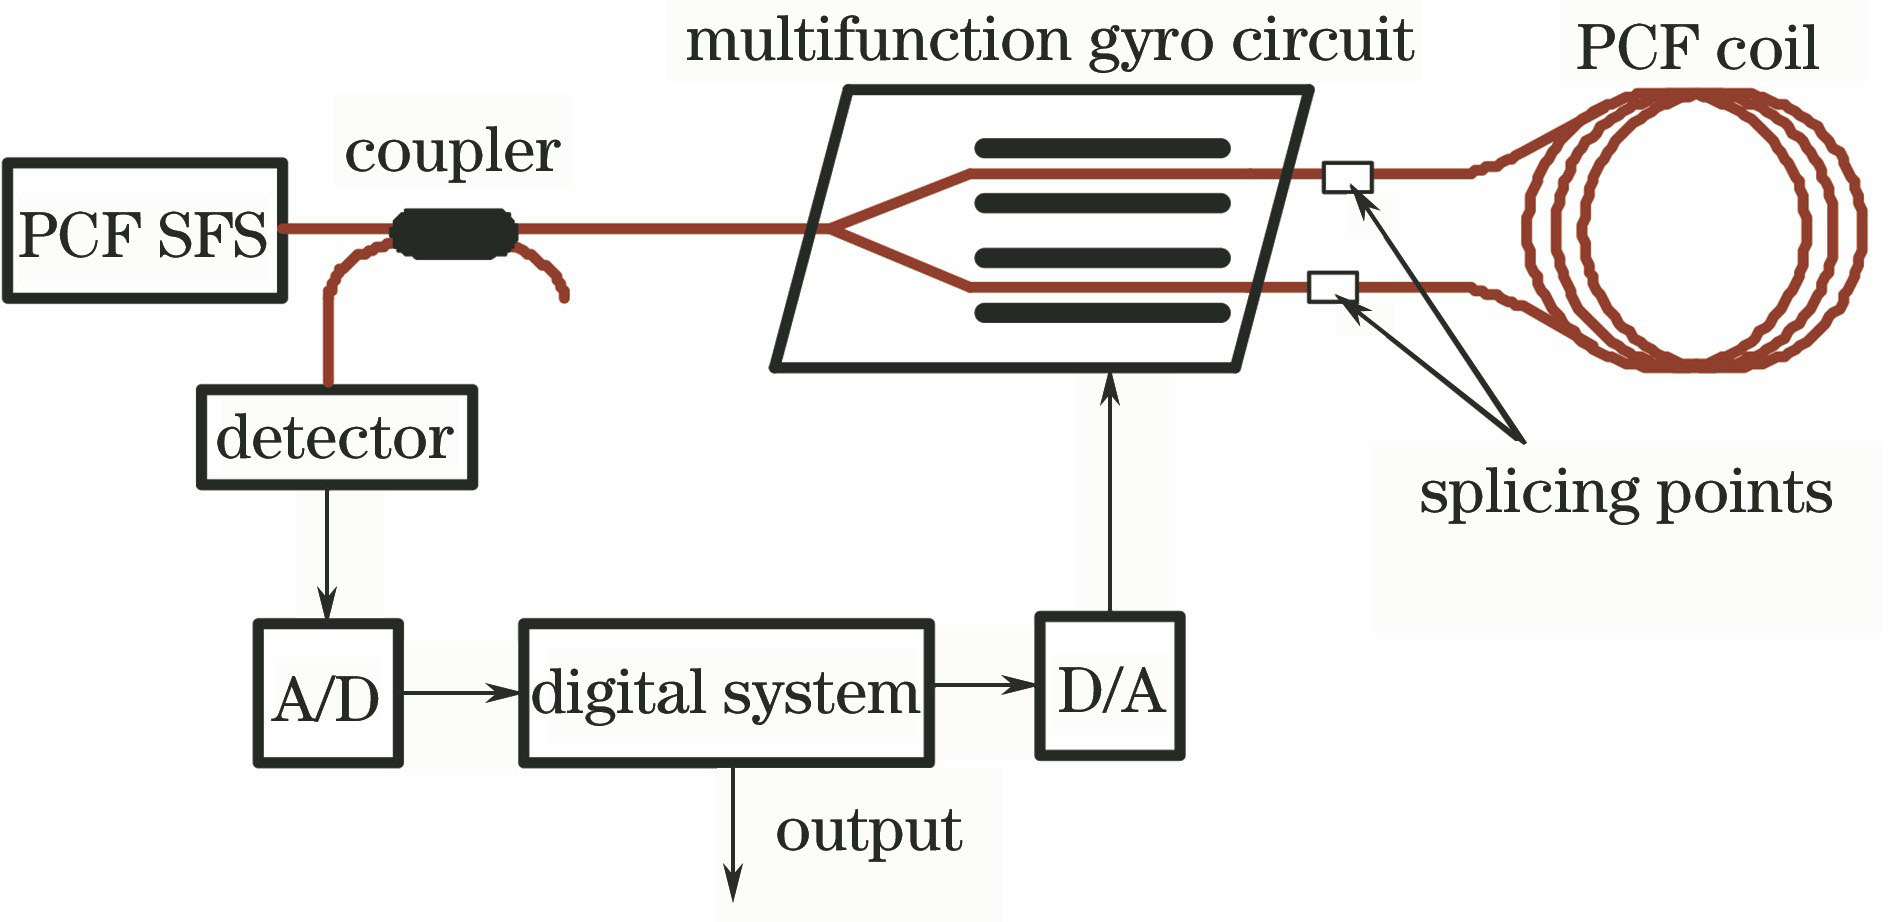 Basic configuration of PCFOG